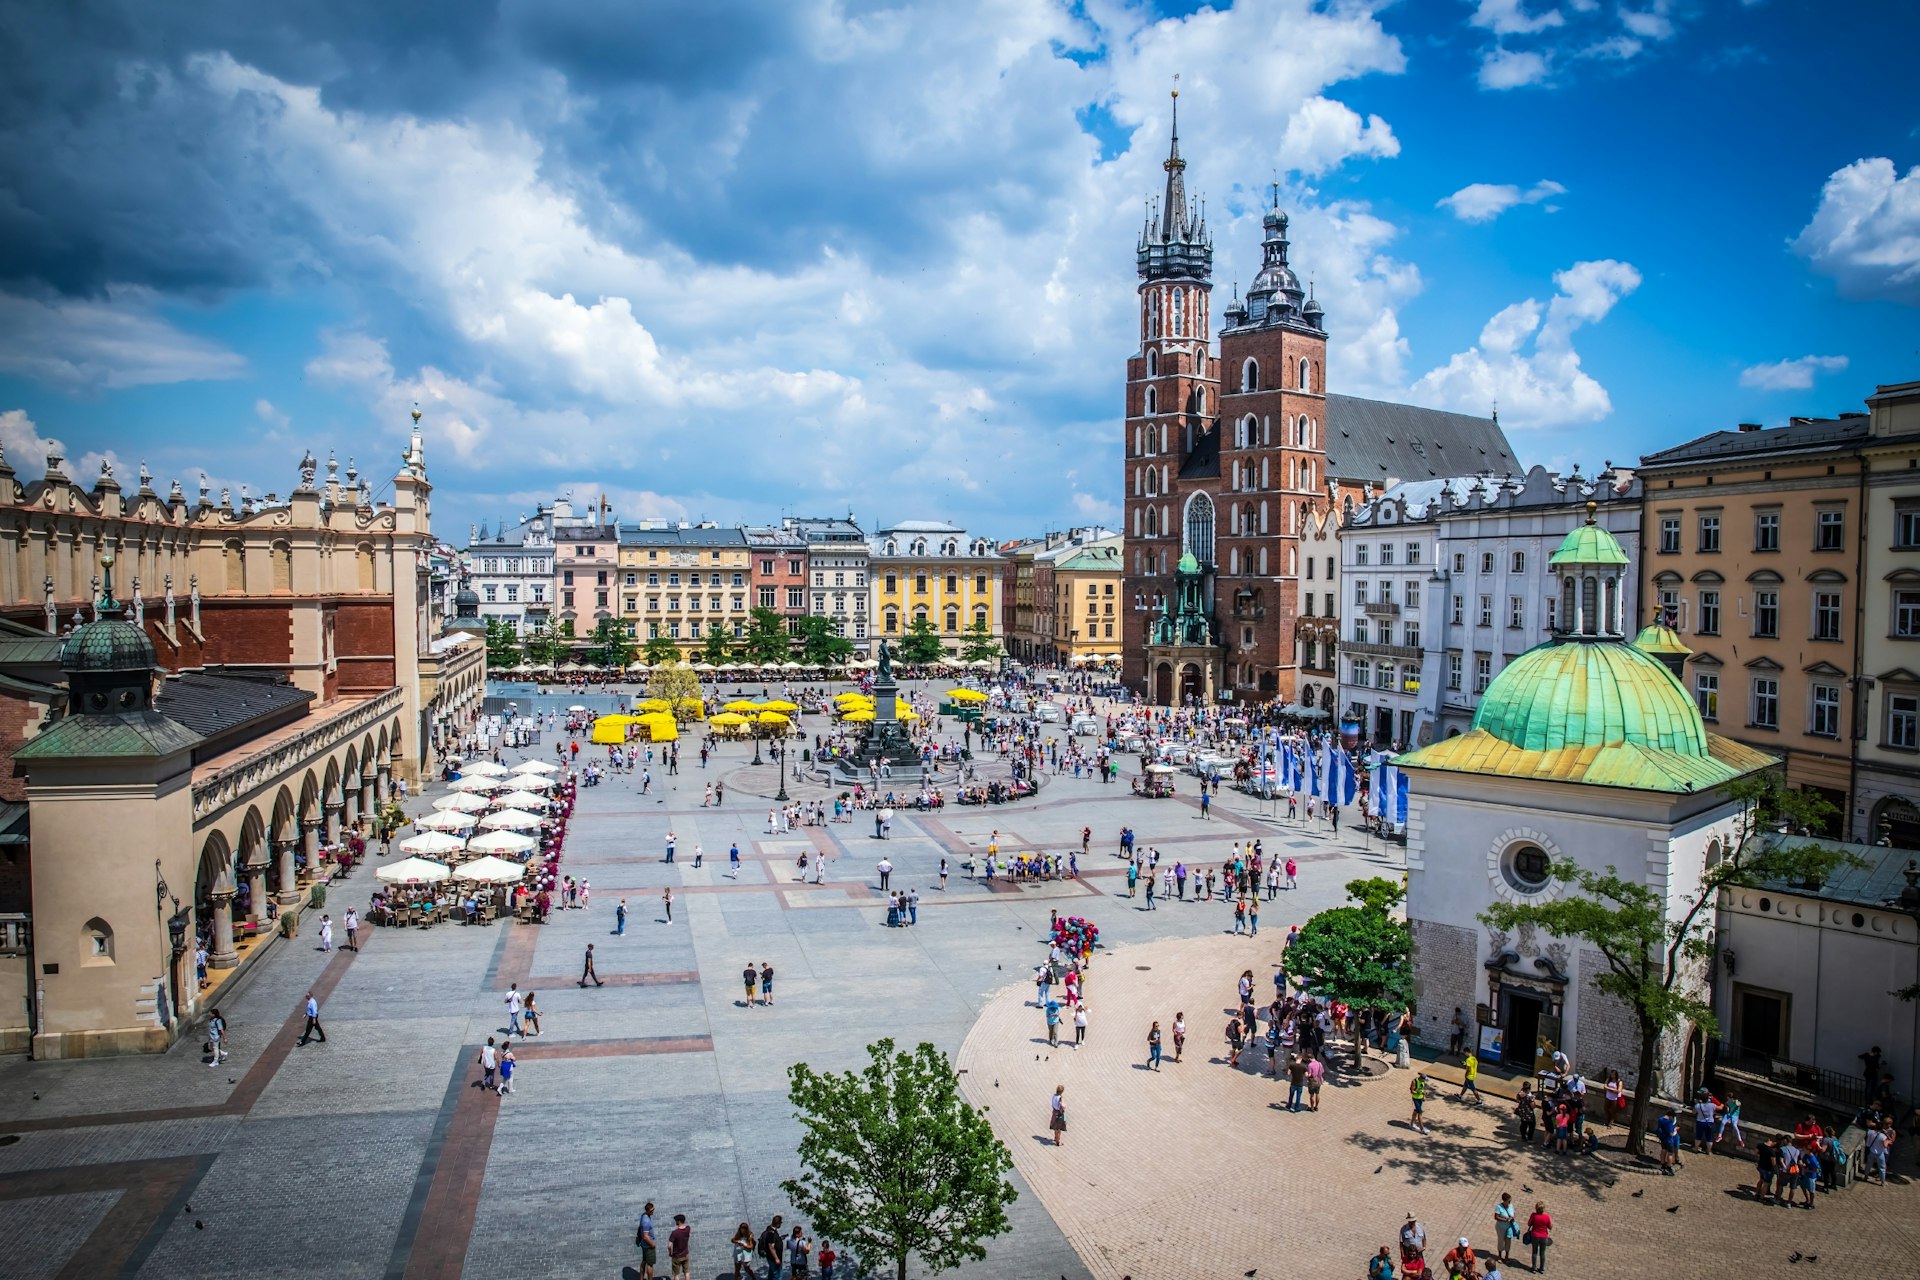 En flygfoto över huvudtorget i den polska staden Kraków.  Människor vandrar runt i det stora öppna utrymmet, som flankeras av byggnader och har en liten marknadsplats i drift.